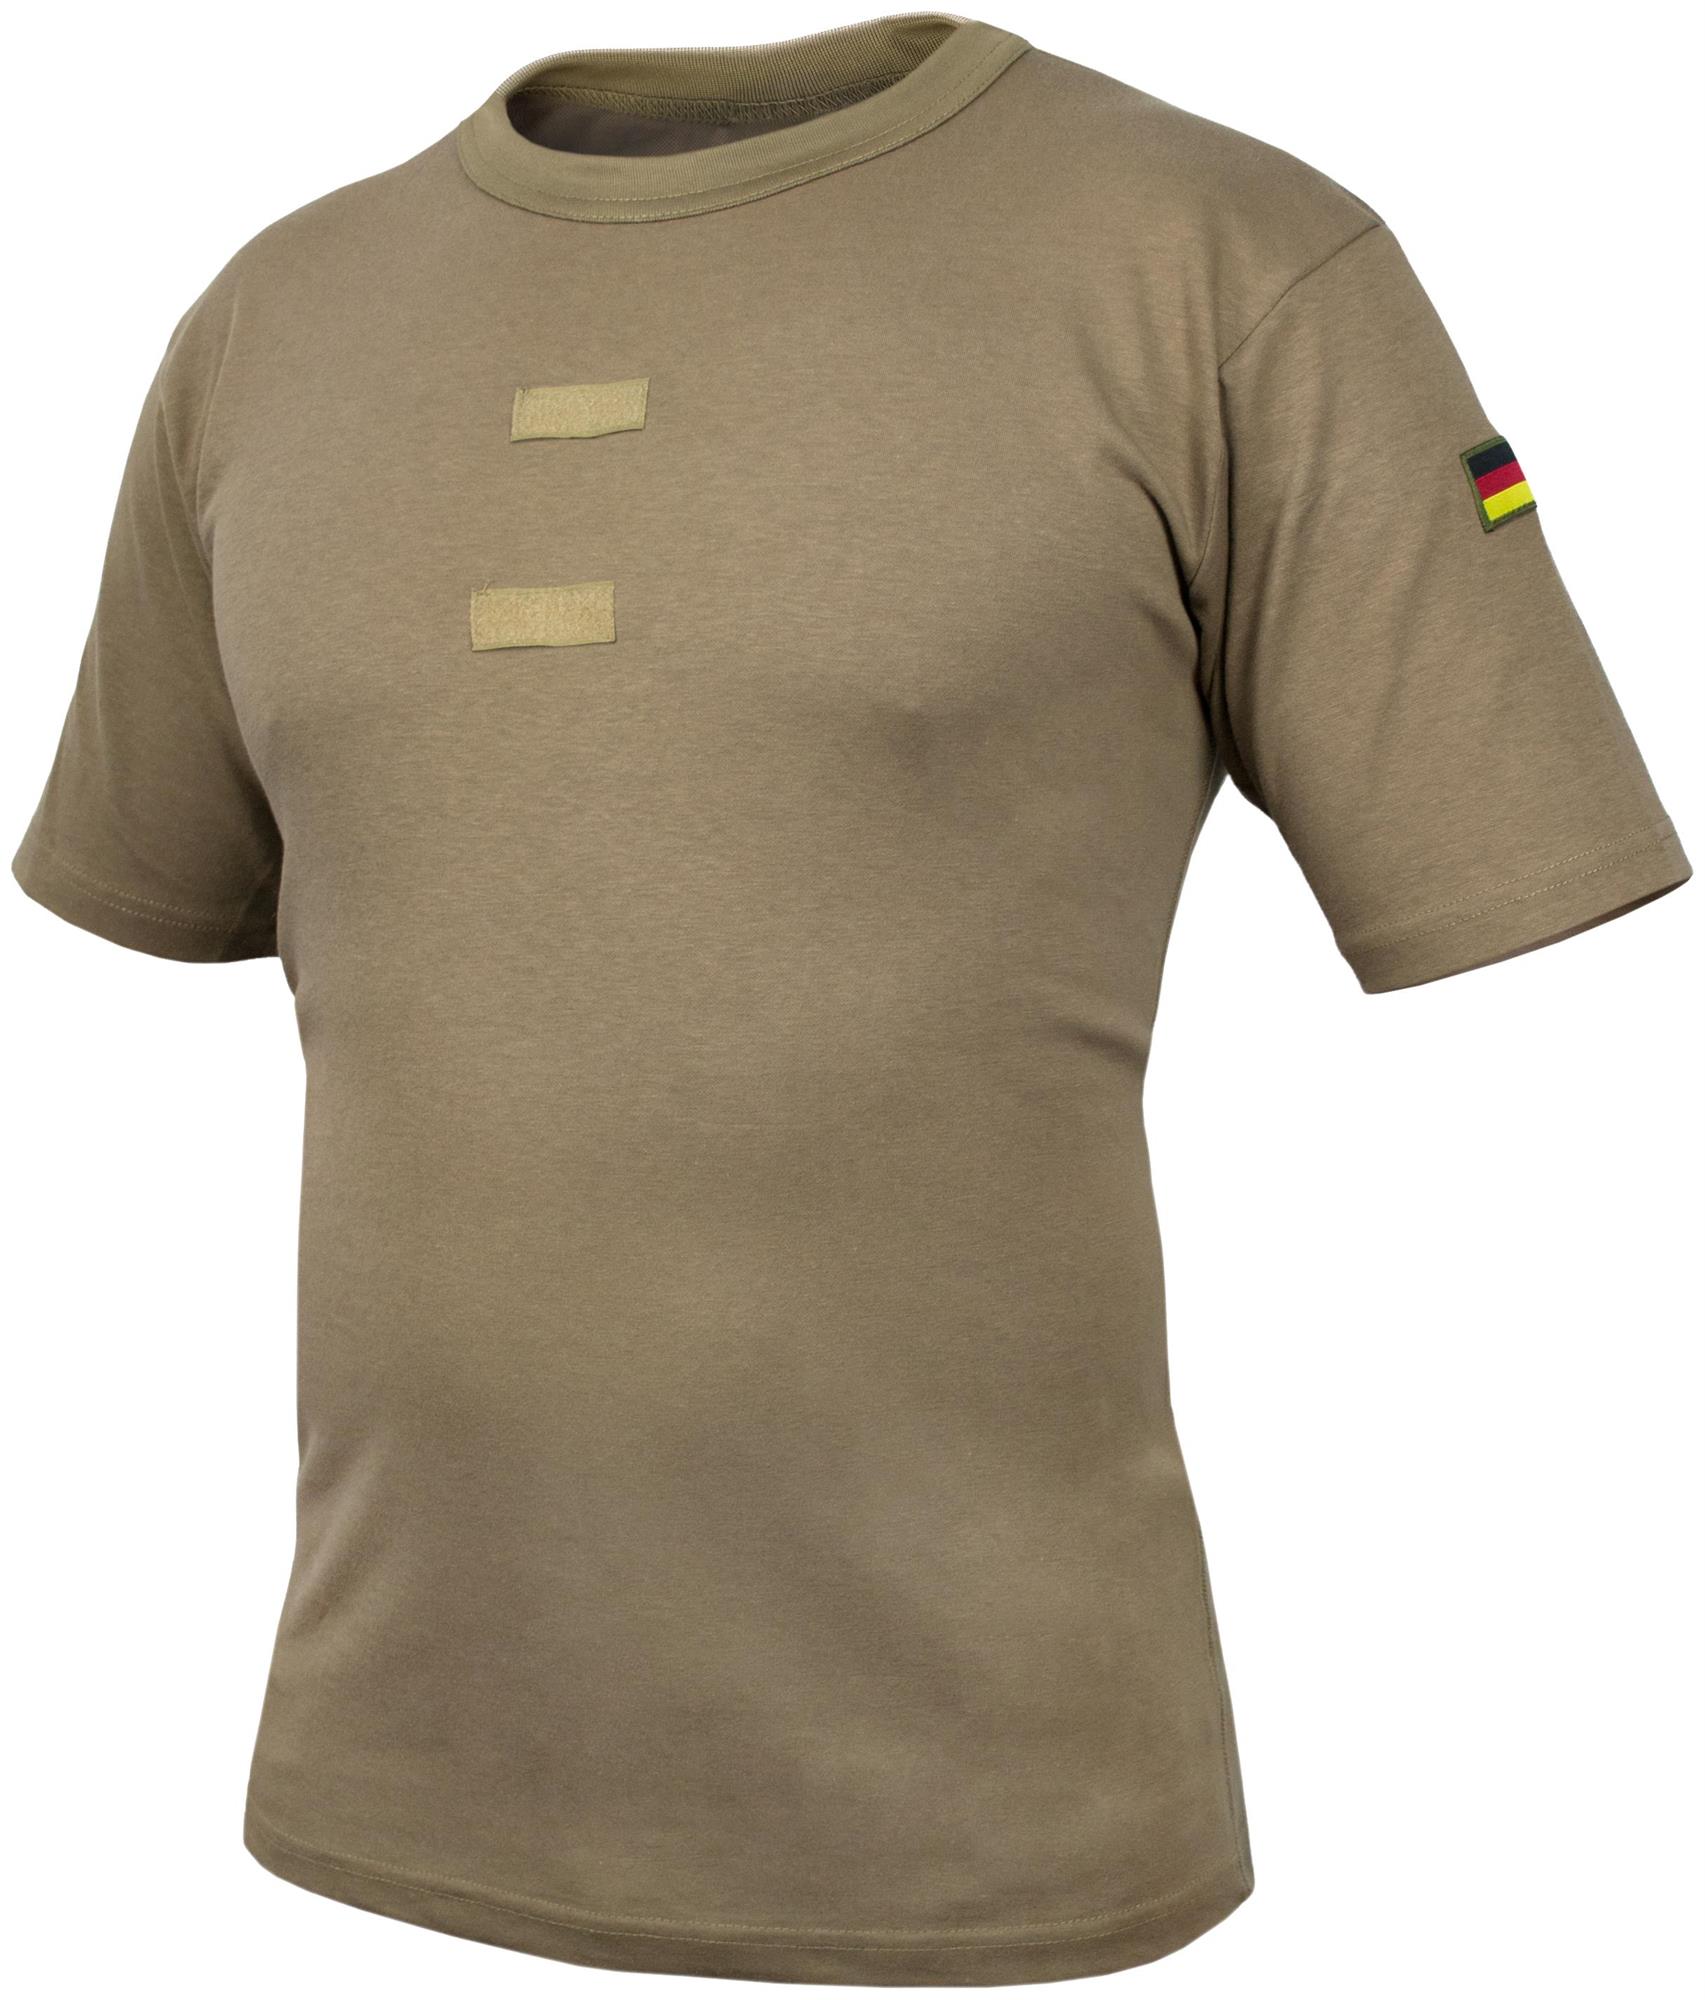 BW T-Shirt Unterhemd Tropen beige khaki braun Orginal Neu Gr 4-10 S 4XL 